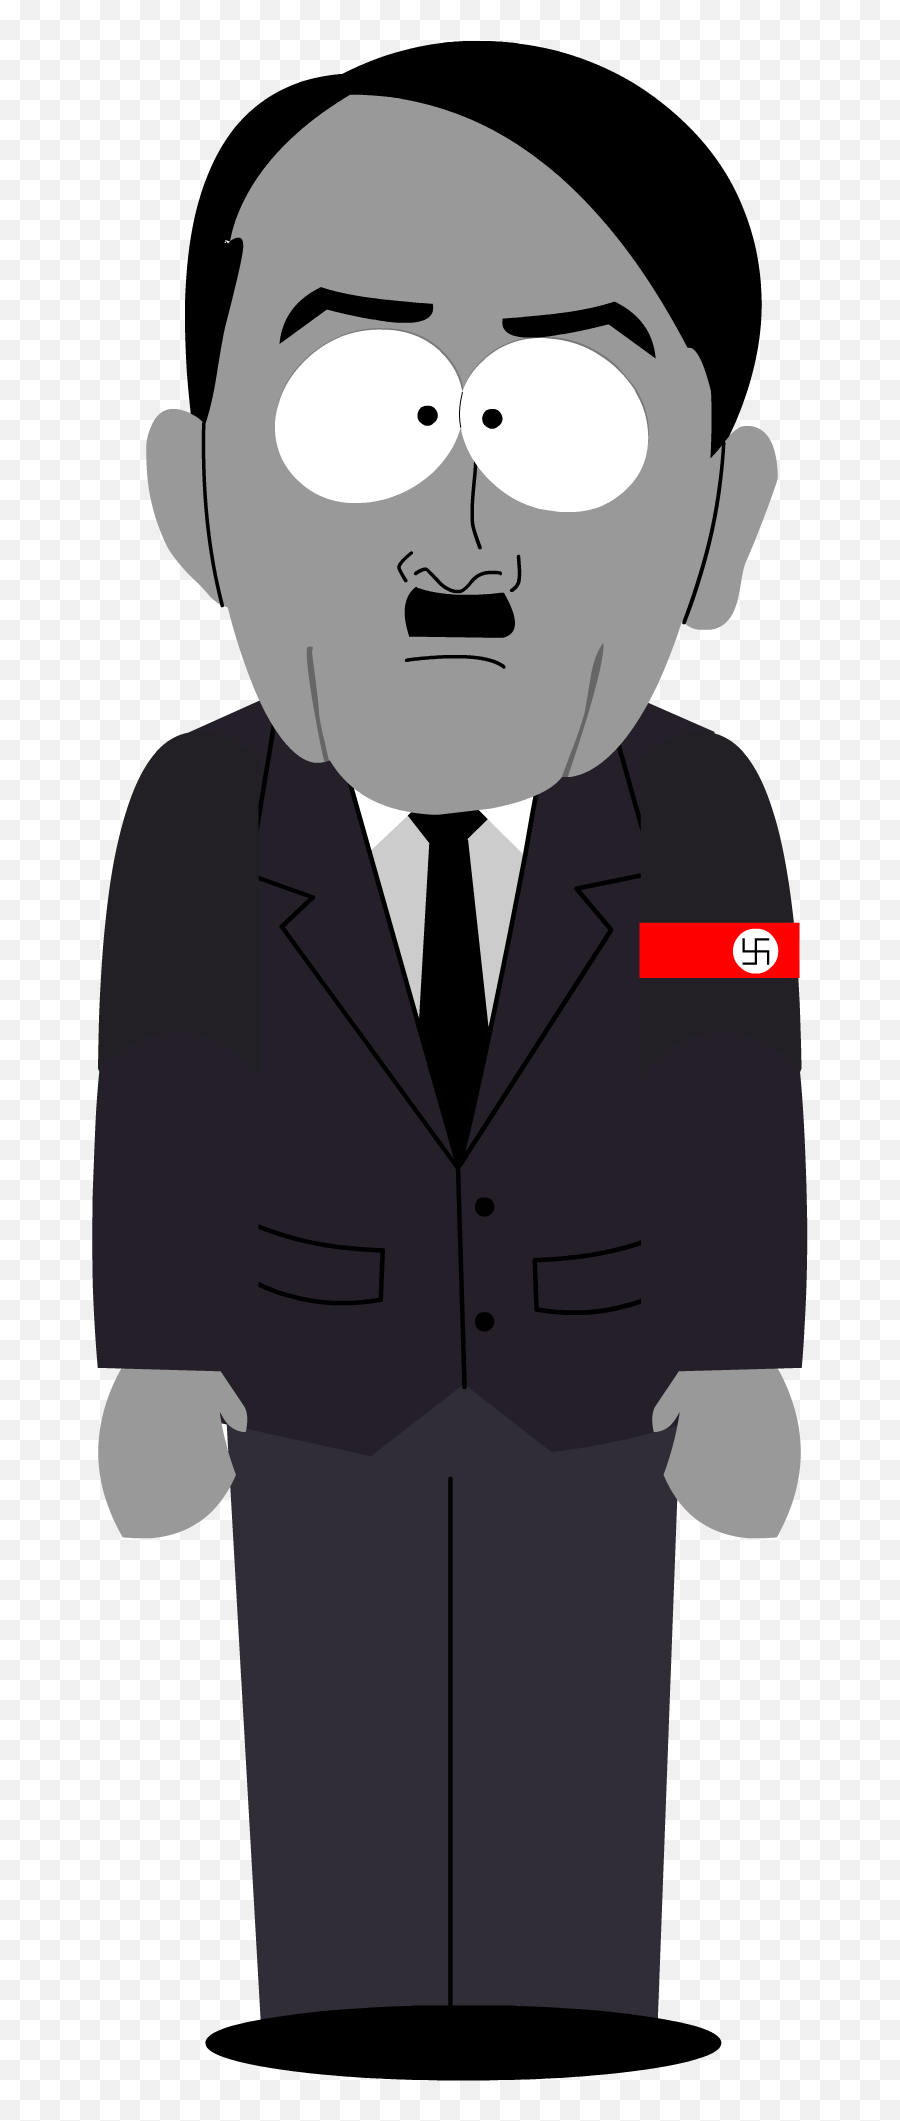 Hitler Png Image Transparent Background - Cartoon Hitler,Hitler Transparent Background